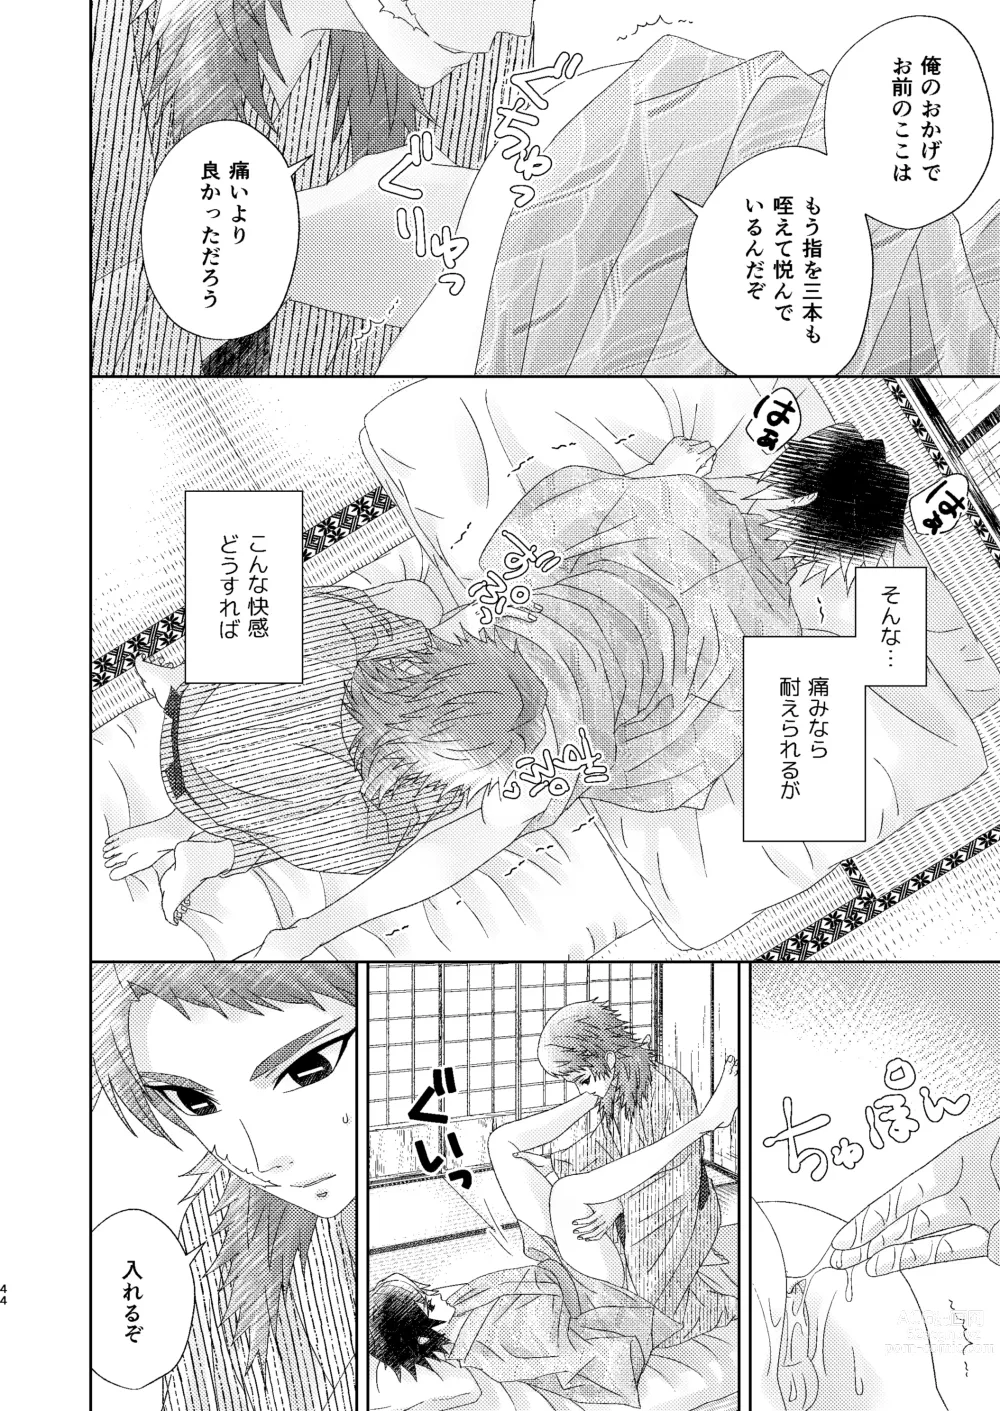 Page 43 of doujinshi Yuurei Kareshi no Koiwazurai